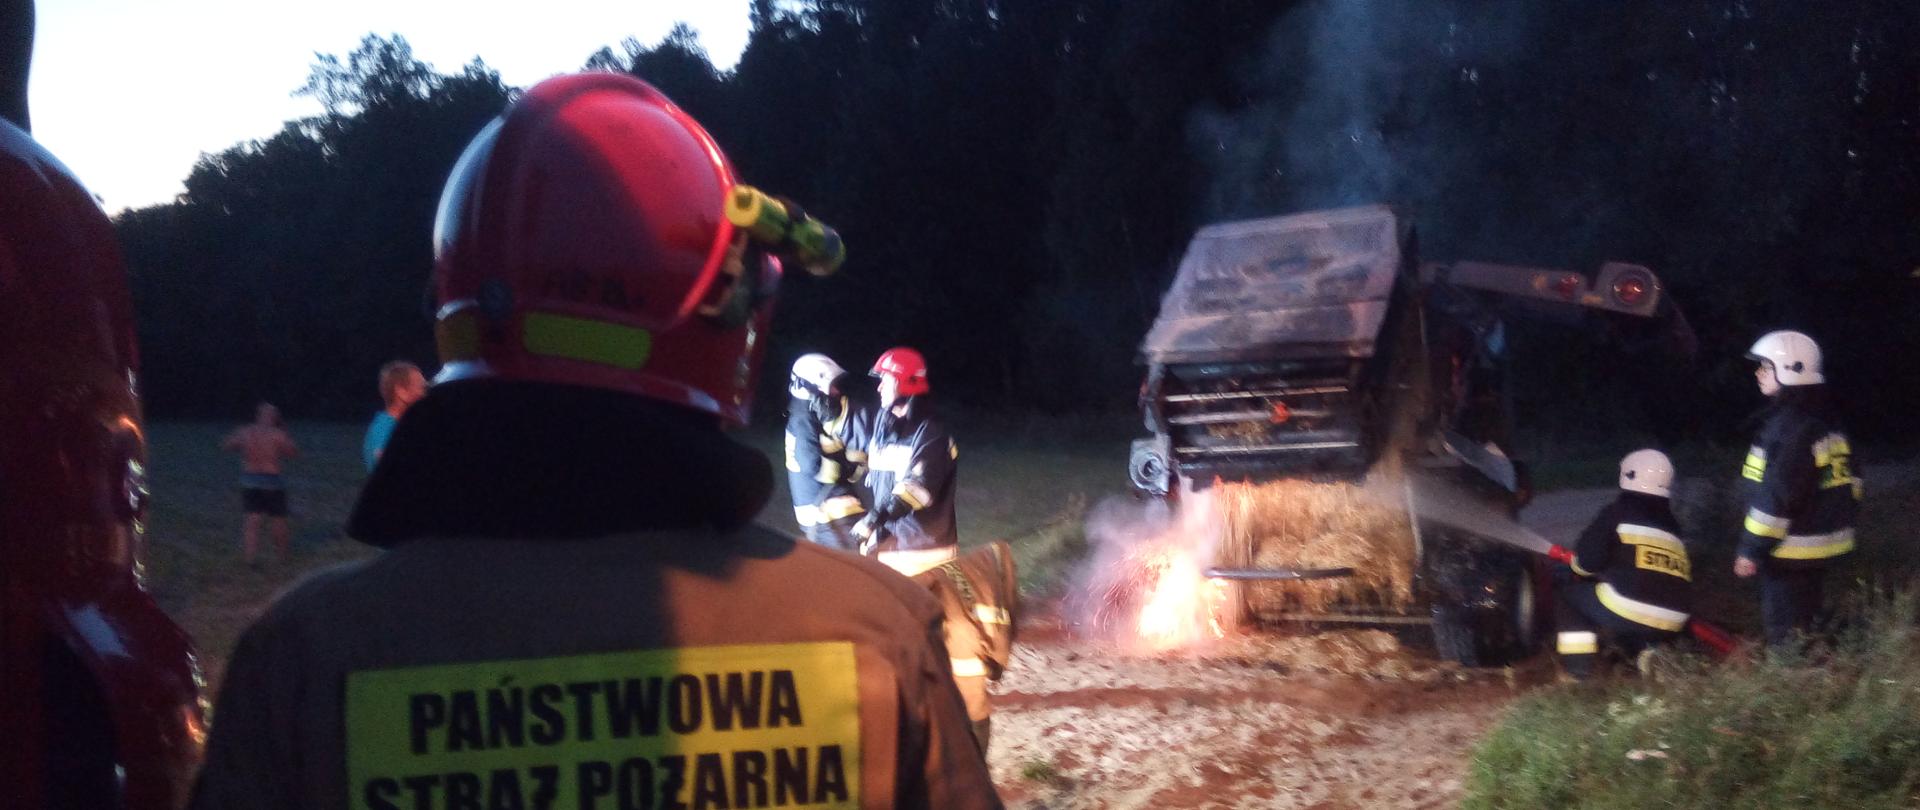 Strażacy podczas gaszenia prasy belującej. Na maszynie widoczne są ślady opalenia. Nad belarką unosi się dym.